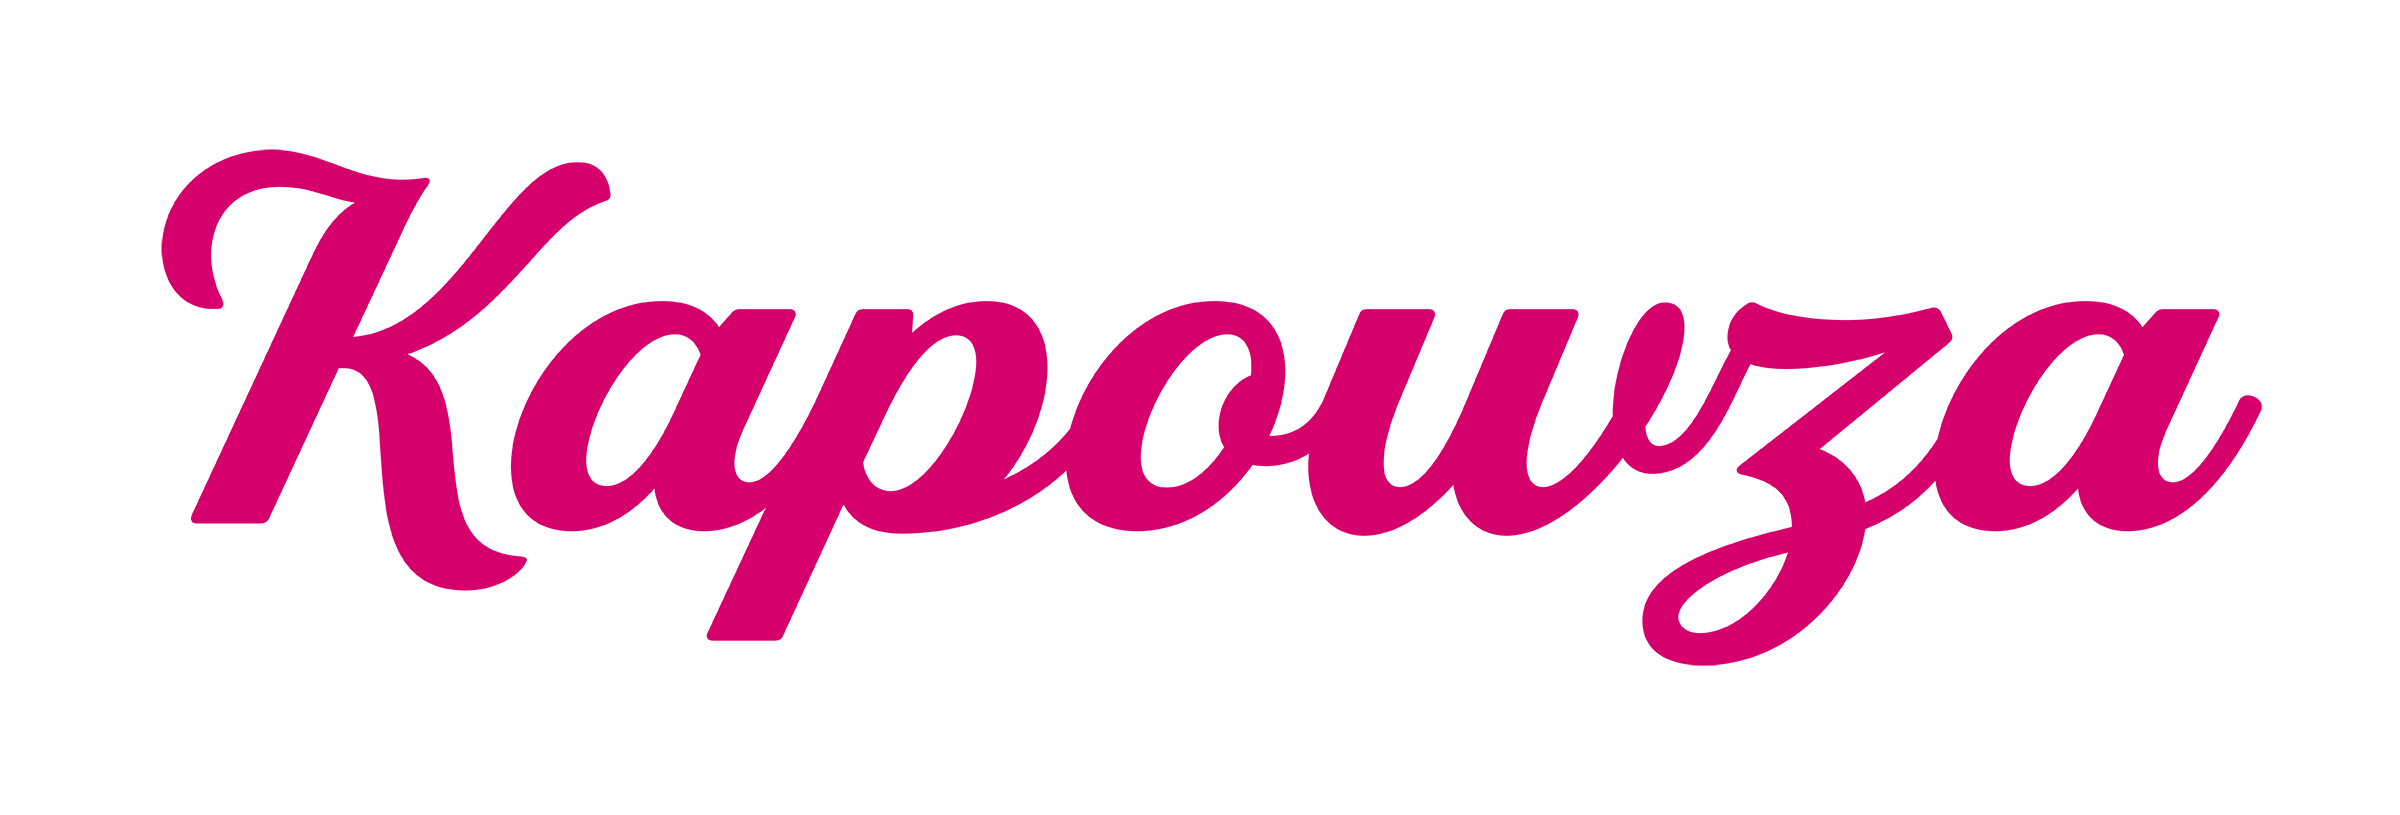 Kapowza Logo